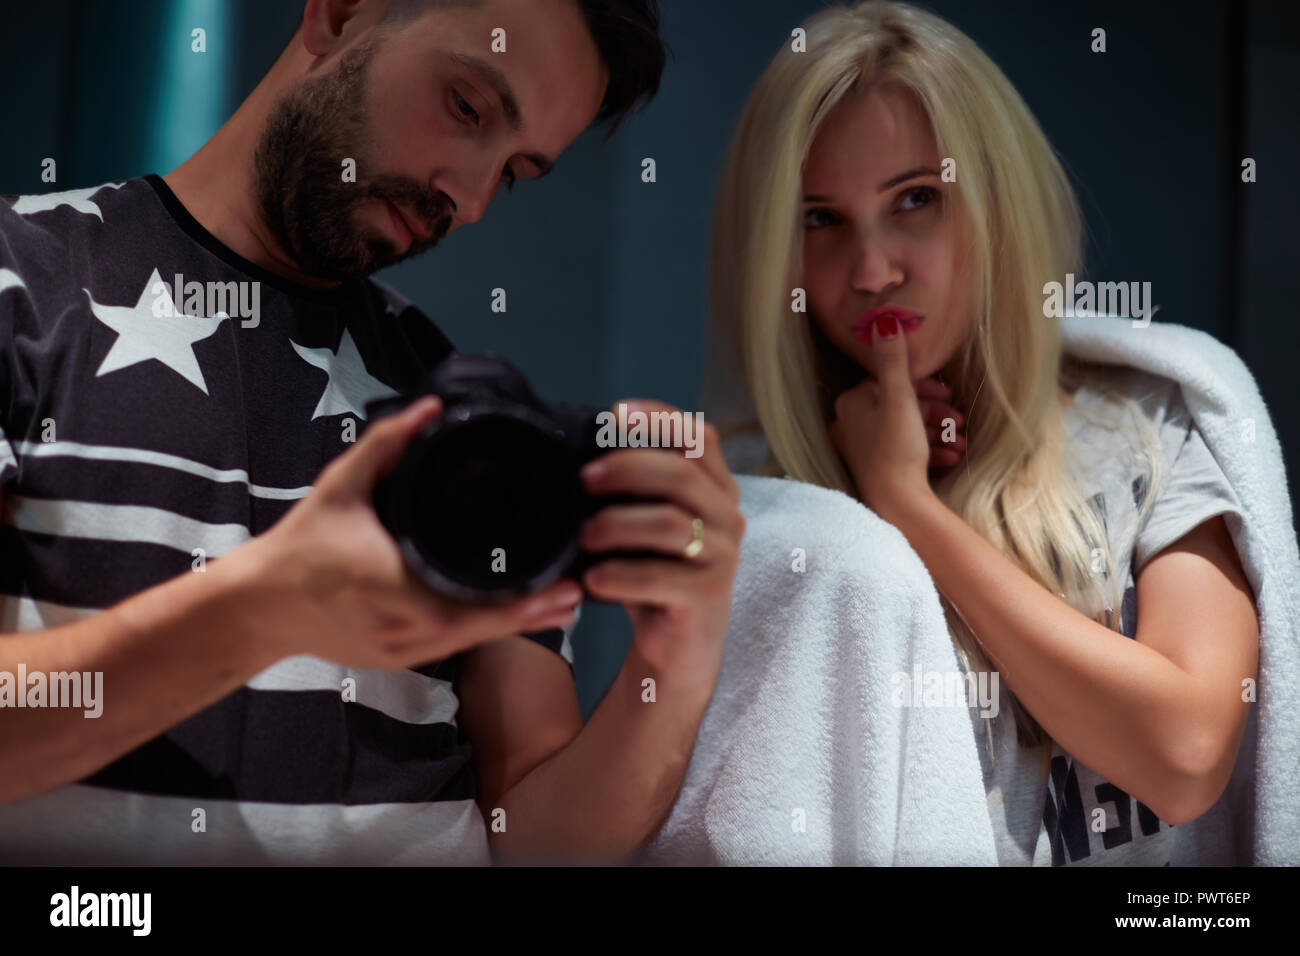 L'homme et de la femme dans la salle de bains photographié dans le miroir Banque D'Images